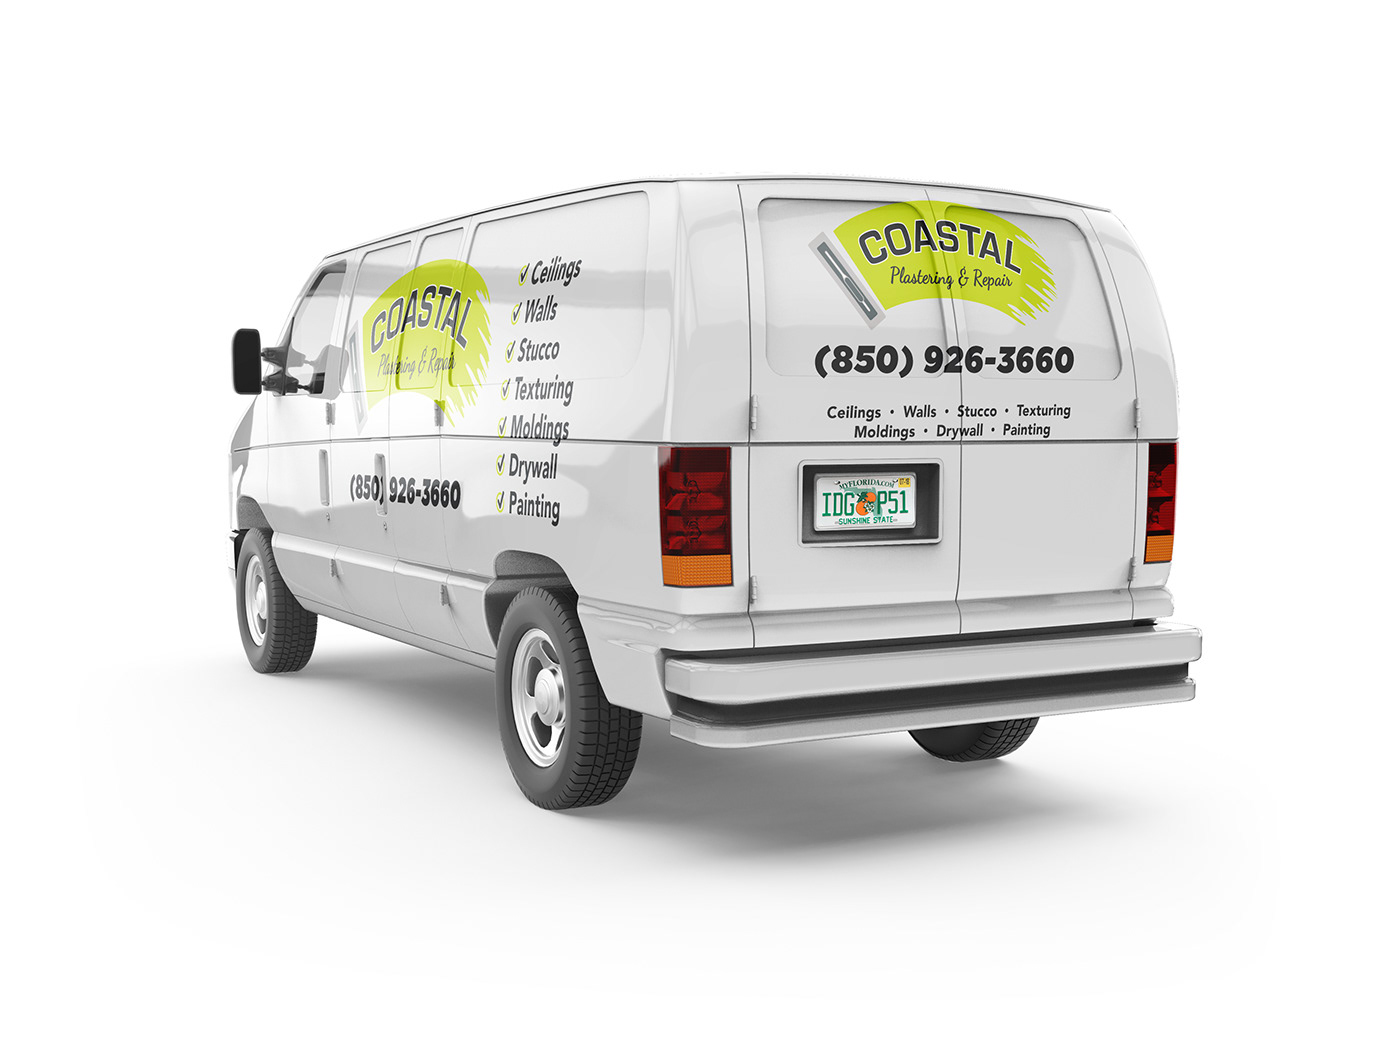 Van wrap designed for Coastal Plastering & Repair.
